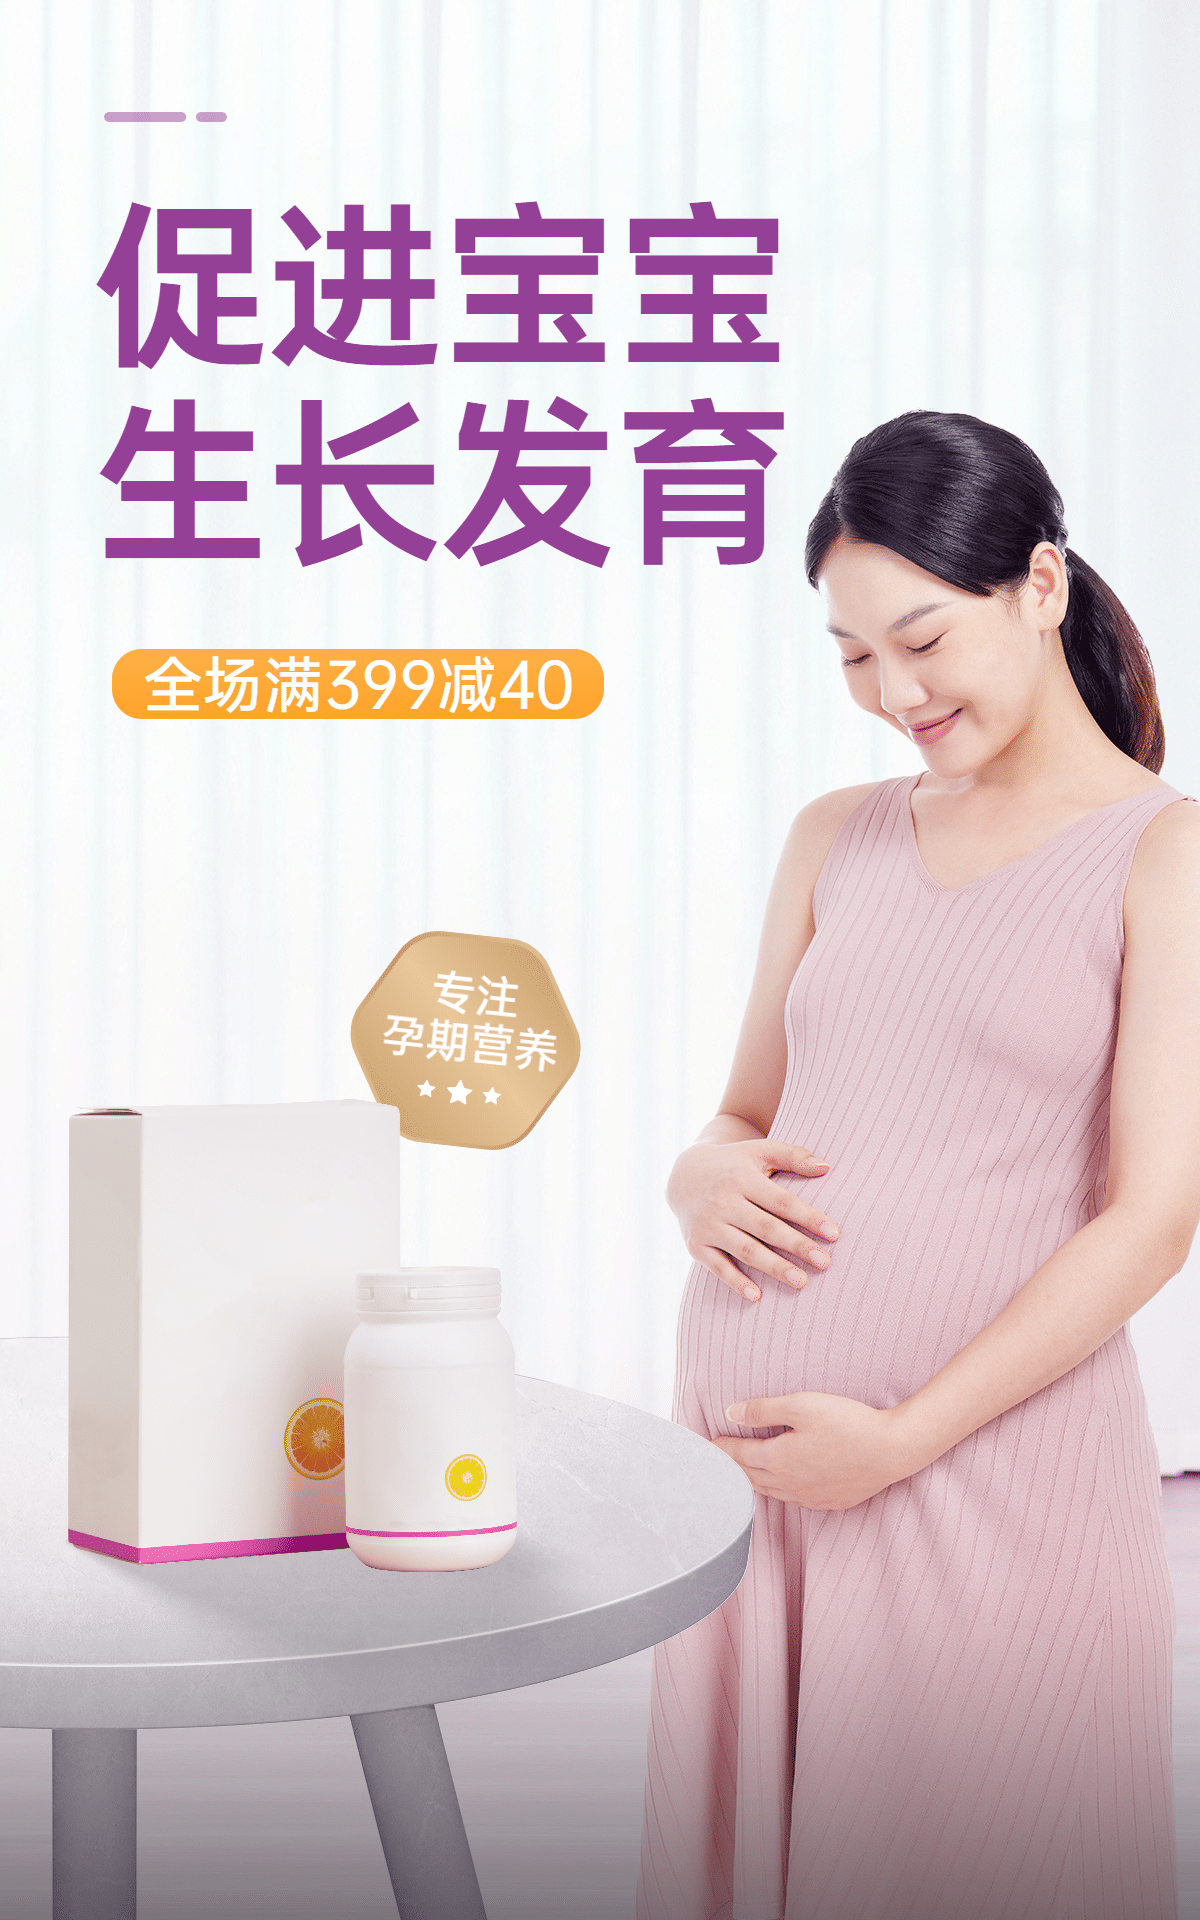 简约母婴孕期食品海报预览效果